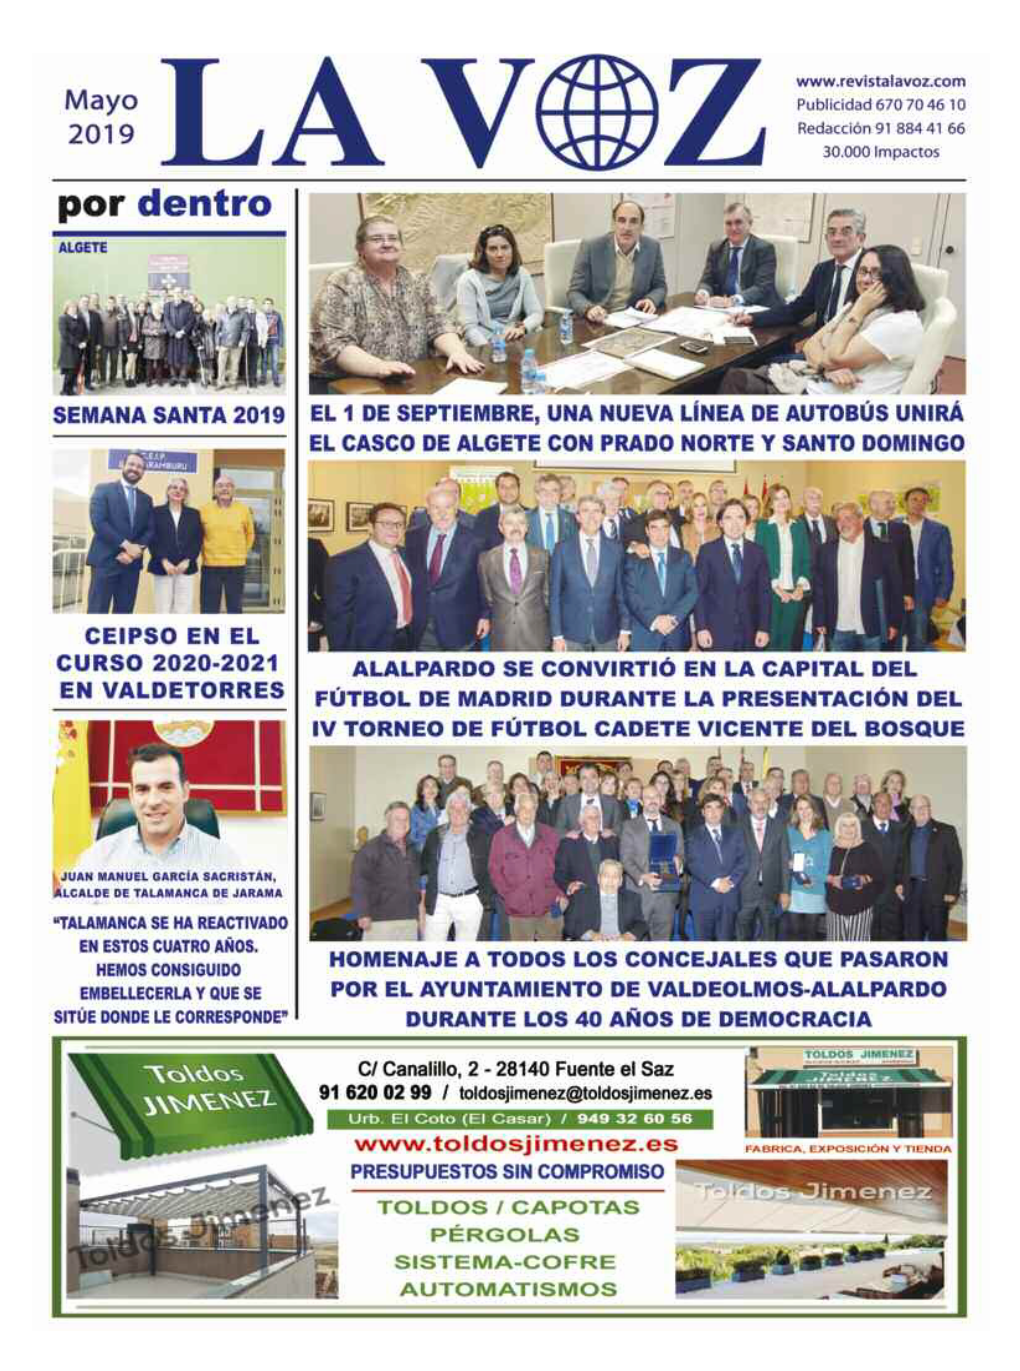 Candidaturas En Las Elecciones Municipales Al Ayuntamiento De Valdeolmos-Alalpardo